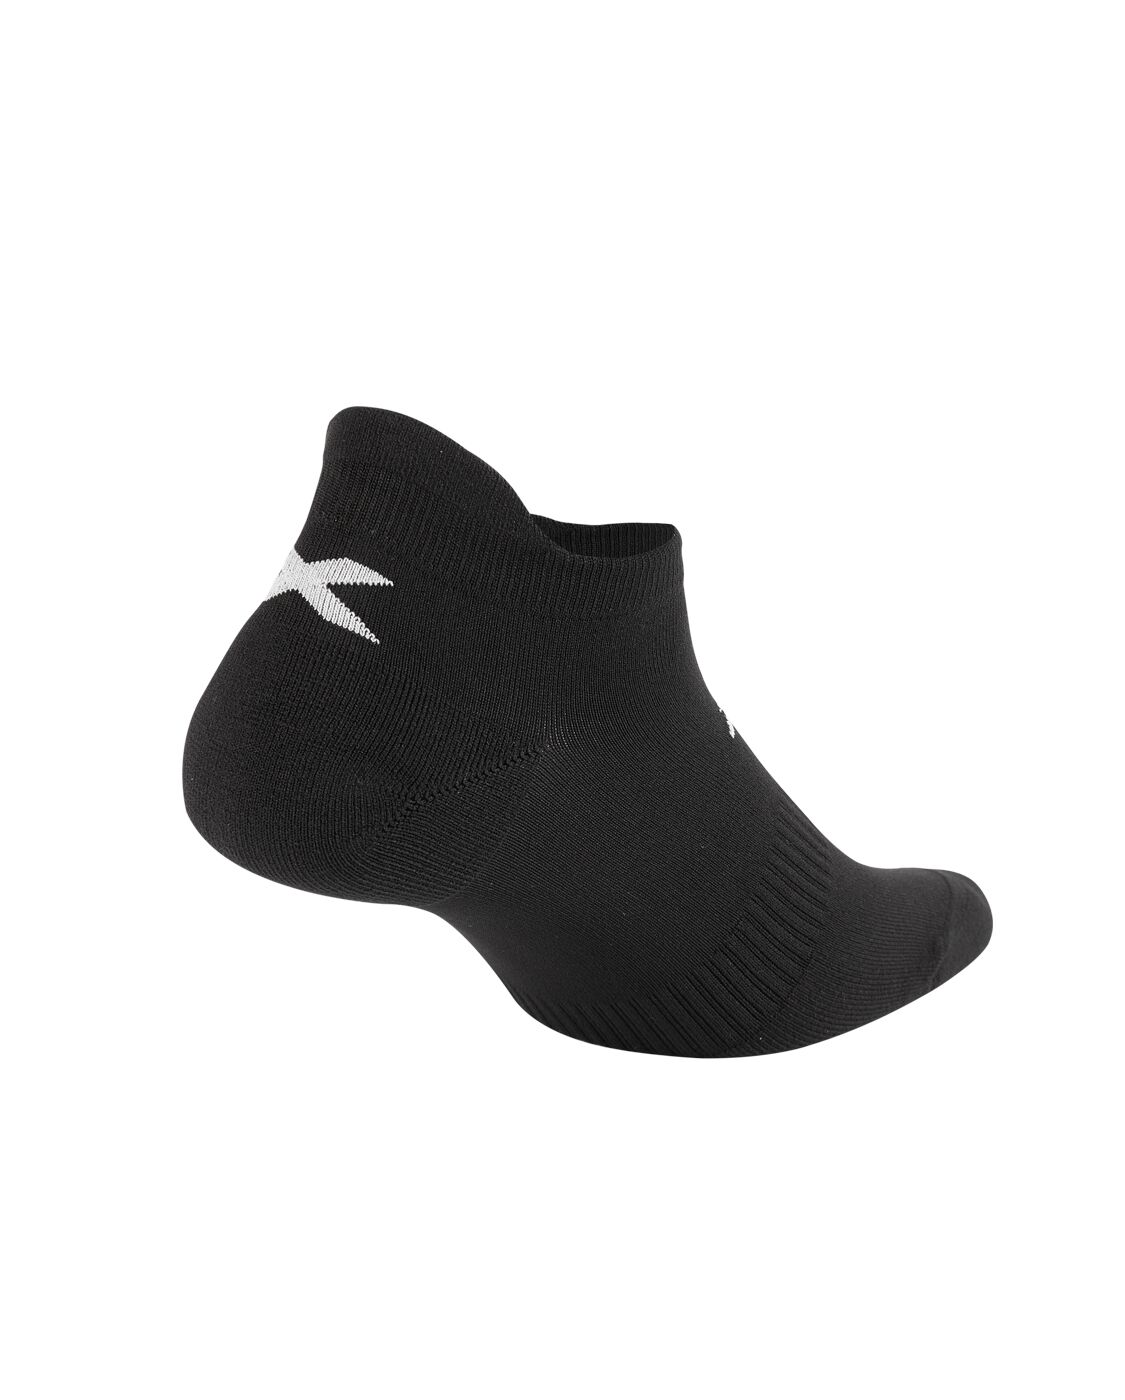 2XU Unisex Ankle Sock 3 Pack - Black/White